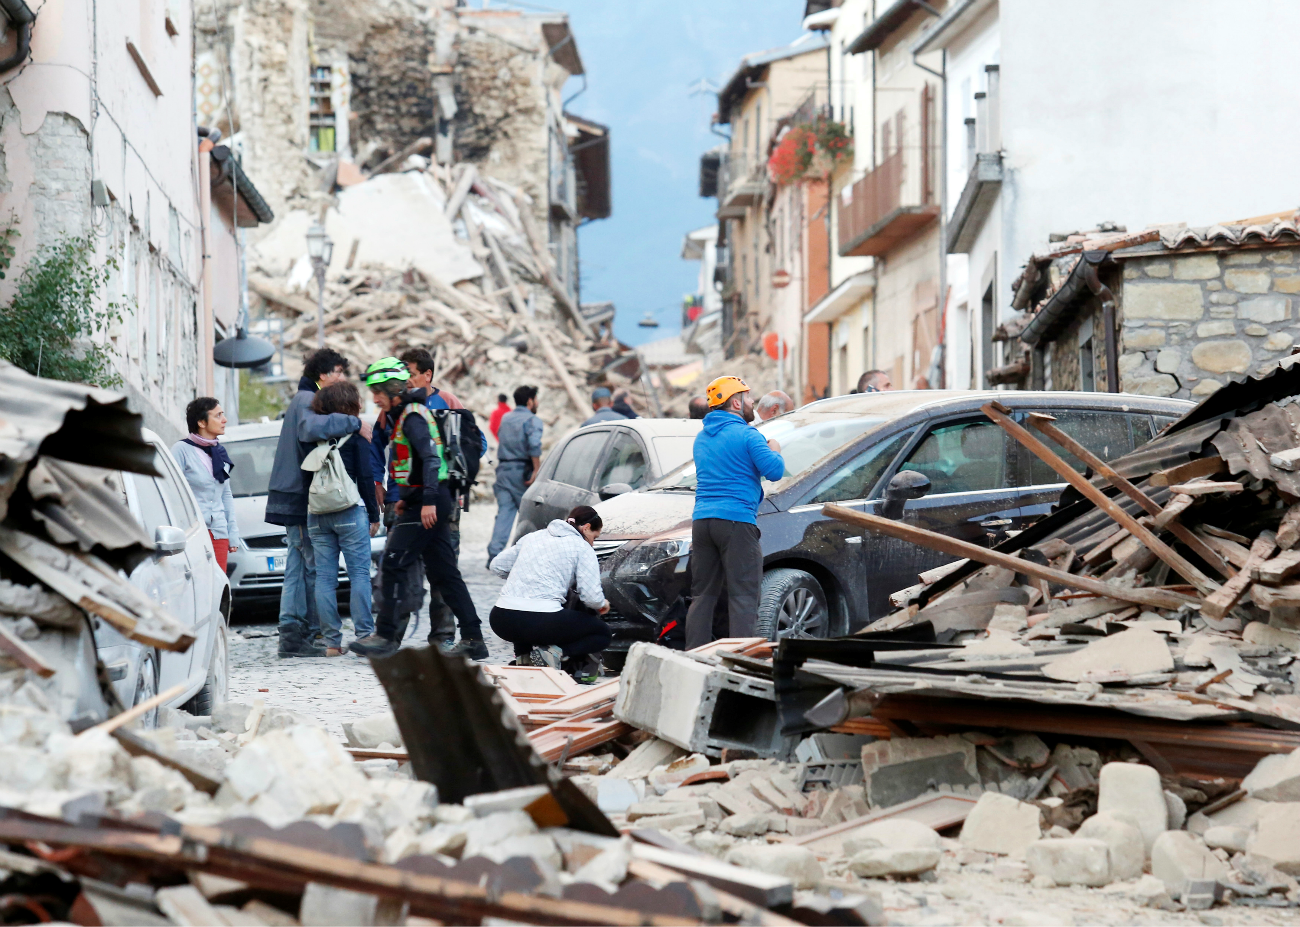 Le strade distrutte di Amatrice, in provincia di Rieti.